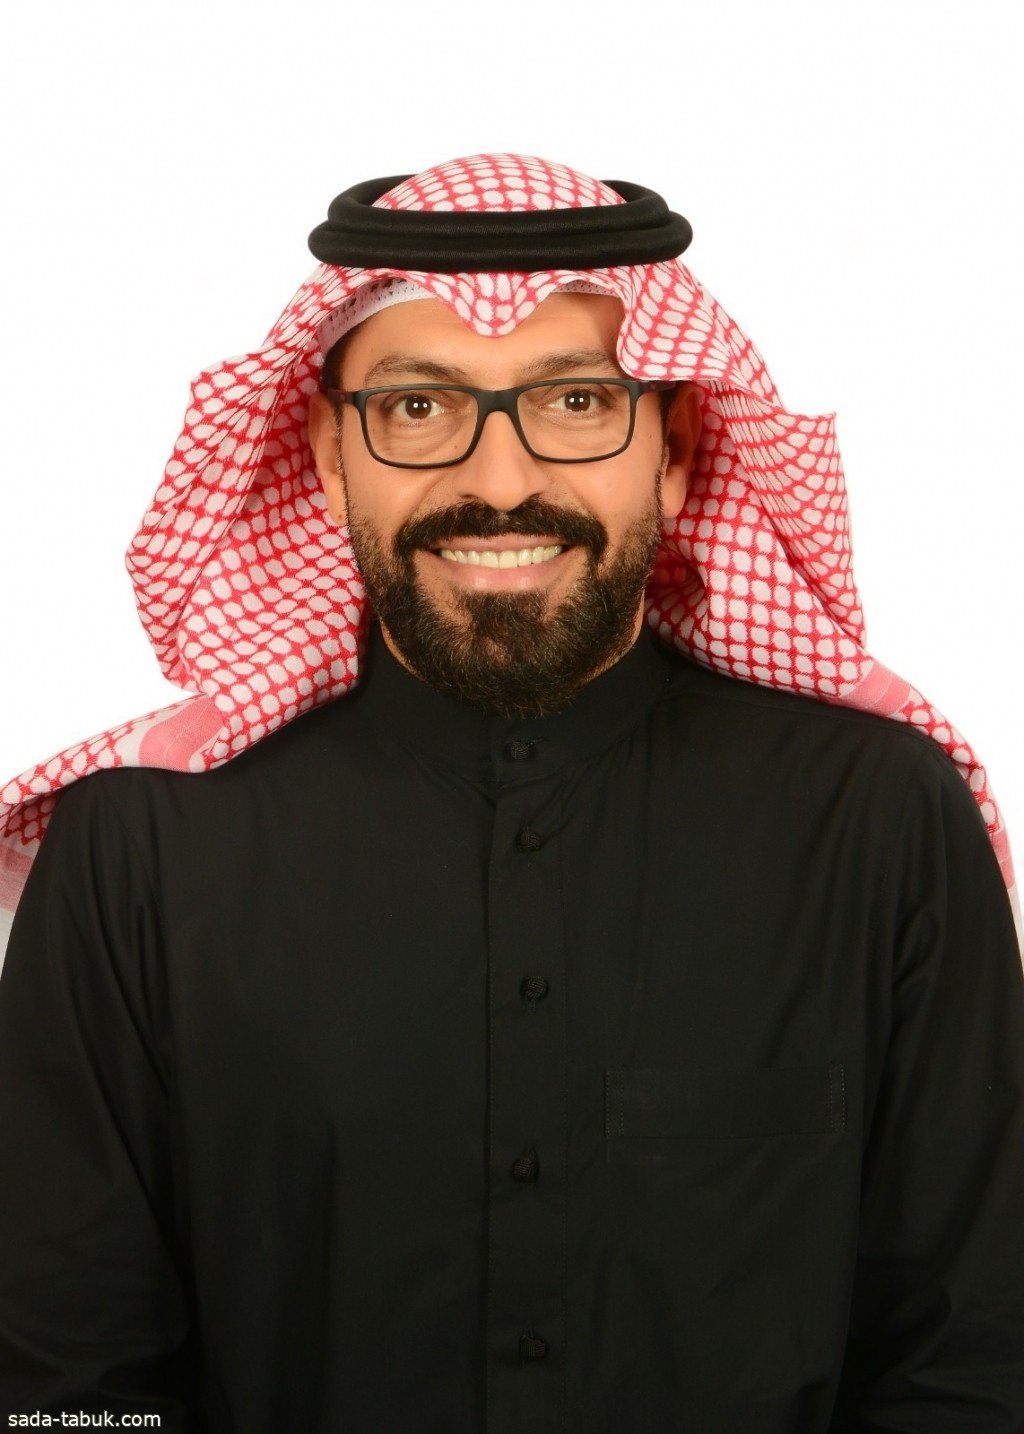 جمعية الإمتياز التجاري بالتعاون مع المنصة السعودية تقدم محاضرة مجانية بعنوان ( الامتياز التجاري ورؤية 2030 )